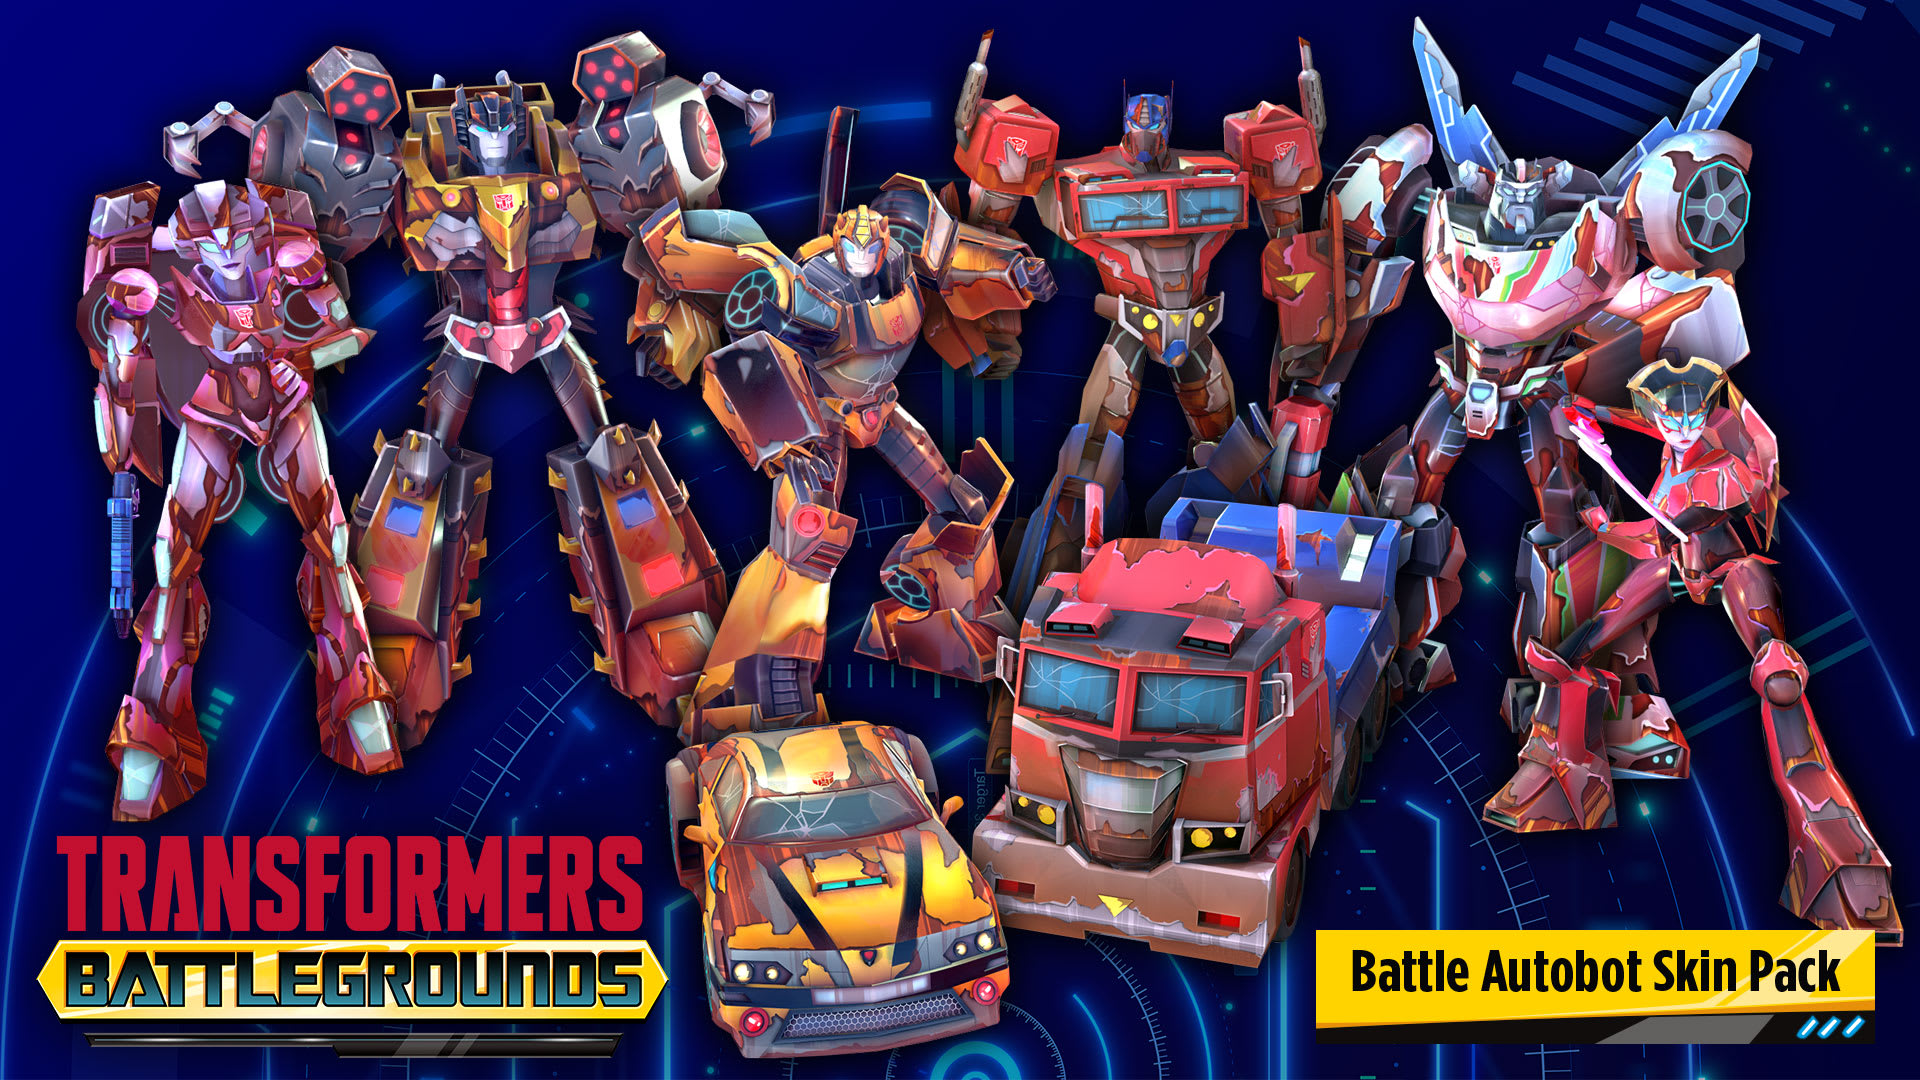 TRANSFORMERS: BATTLEGROUNDS – Battle Autobot Skin Pack